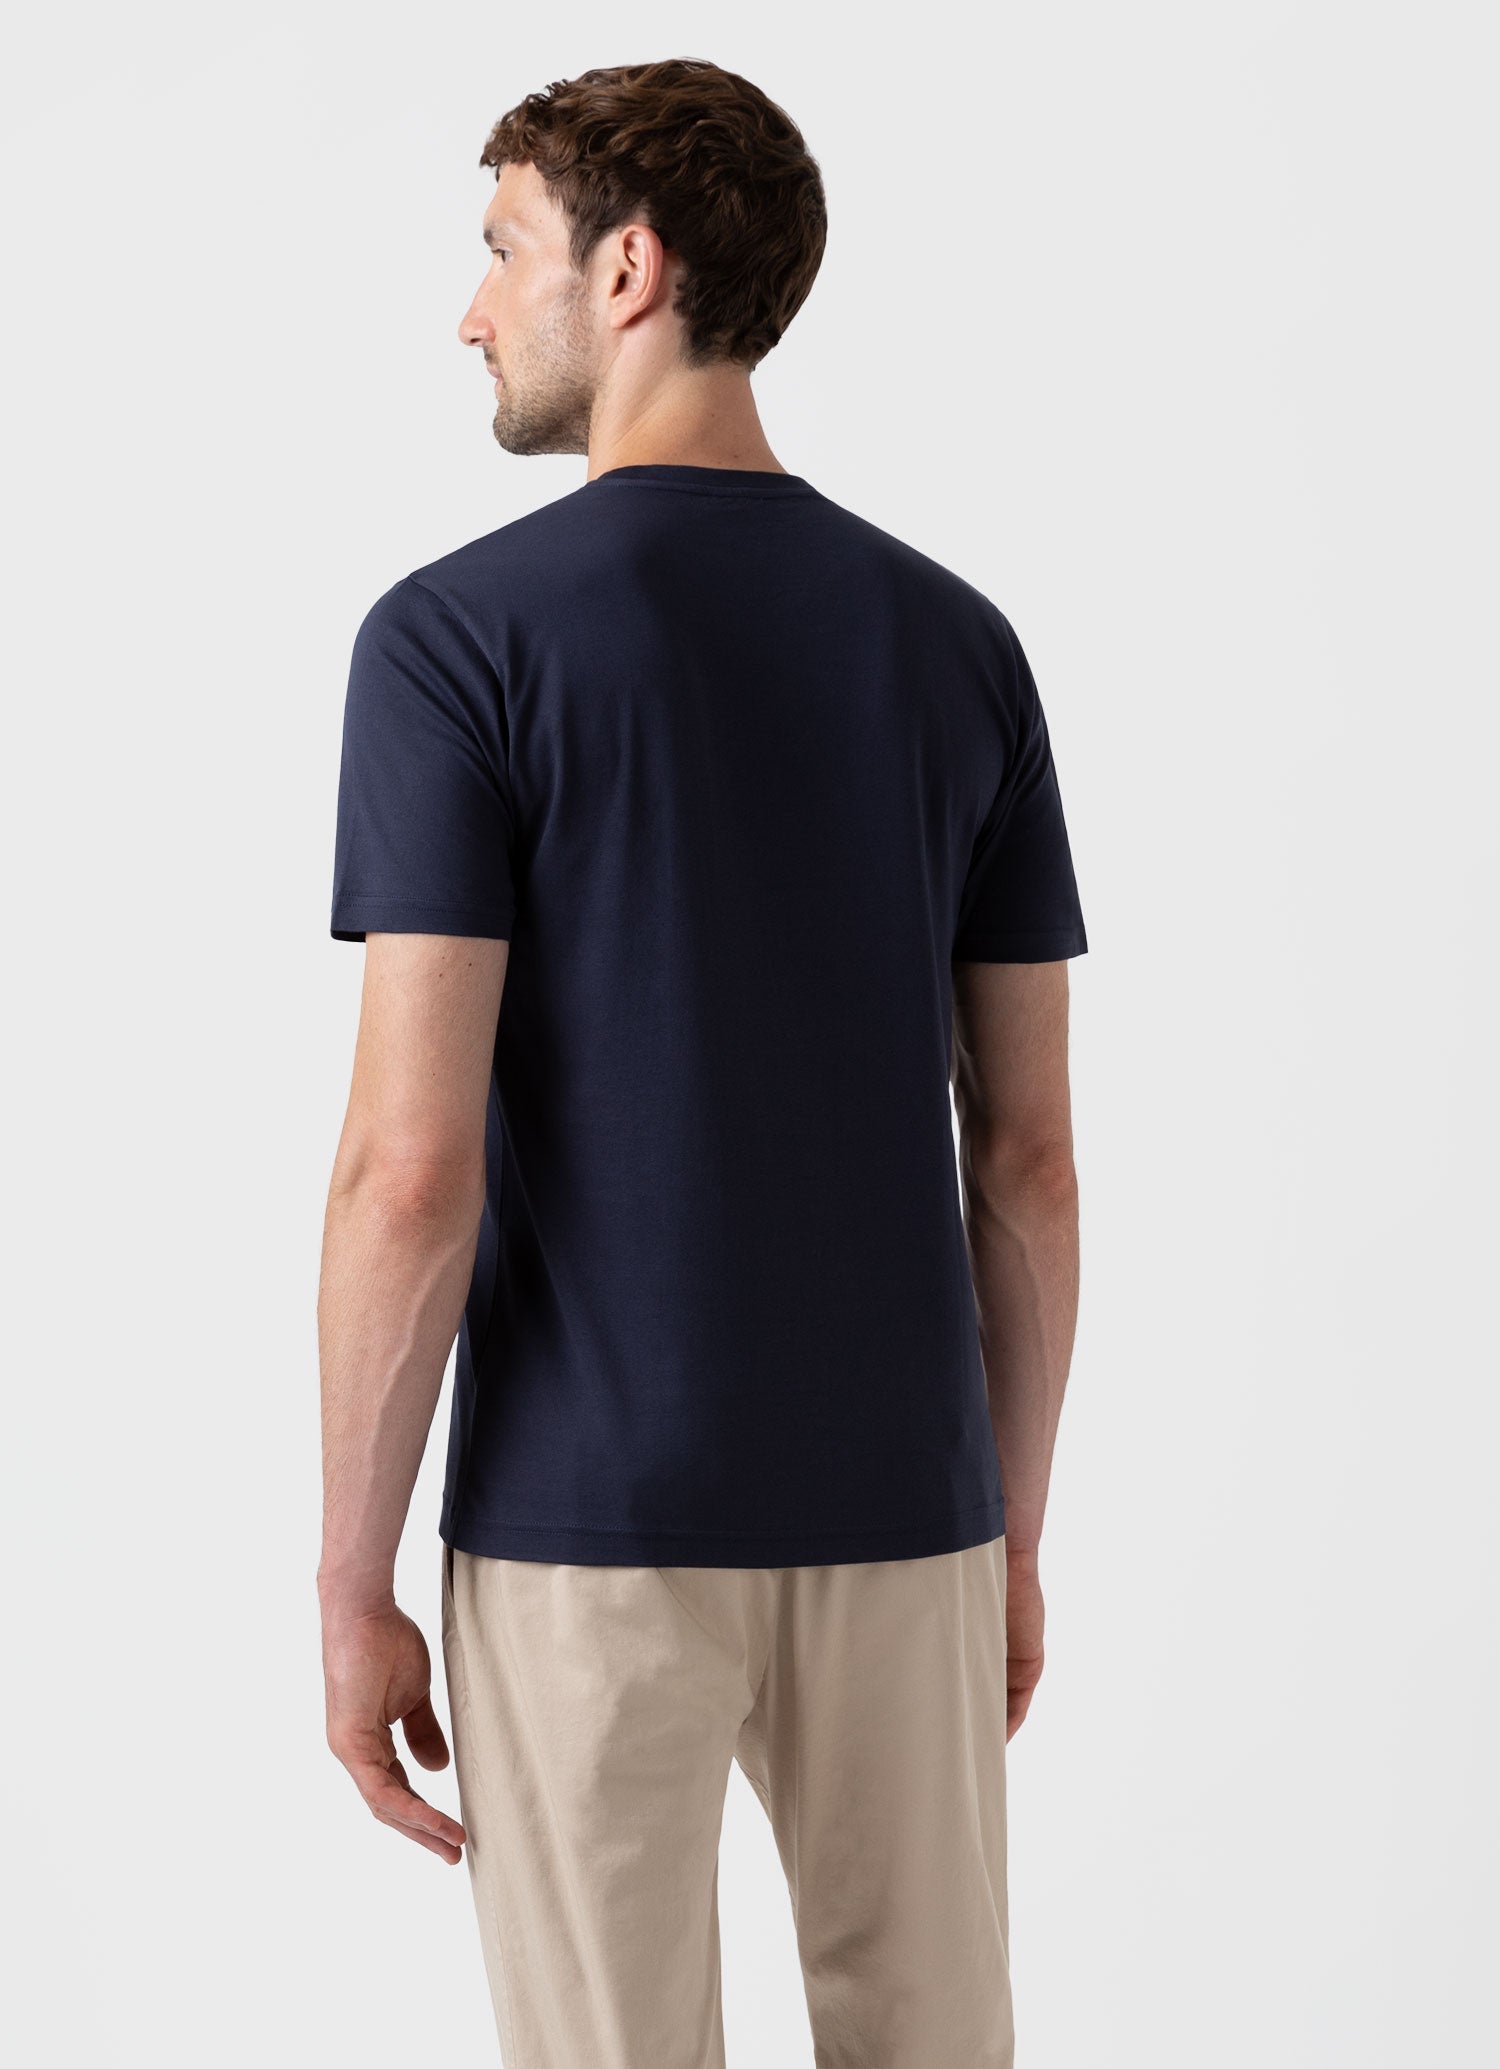 リヴィエラ（ミッドウェイト） Tシャツ （Navy）| Sunspel